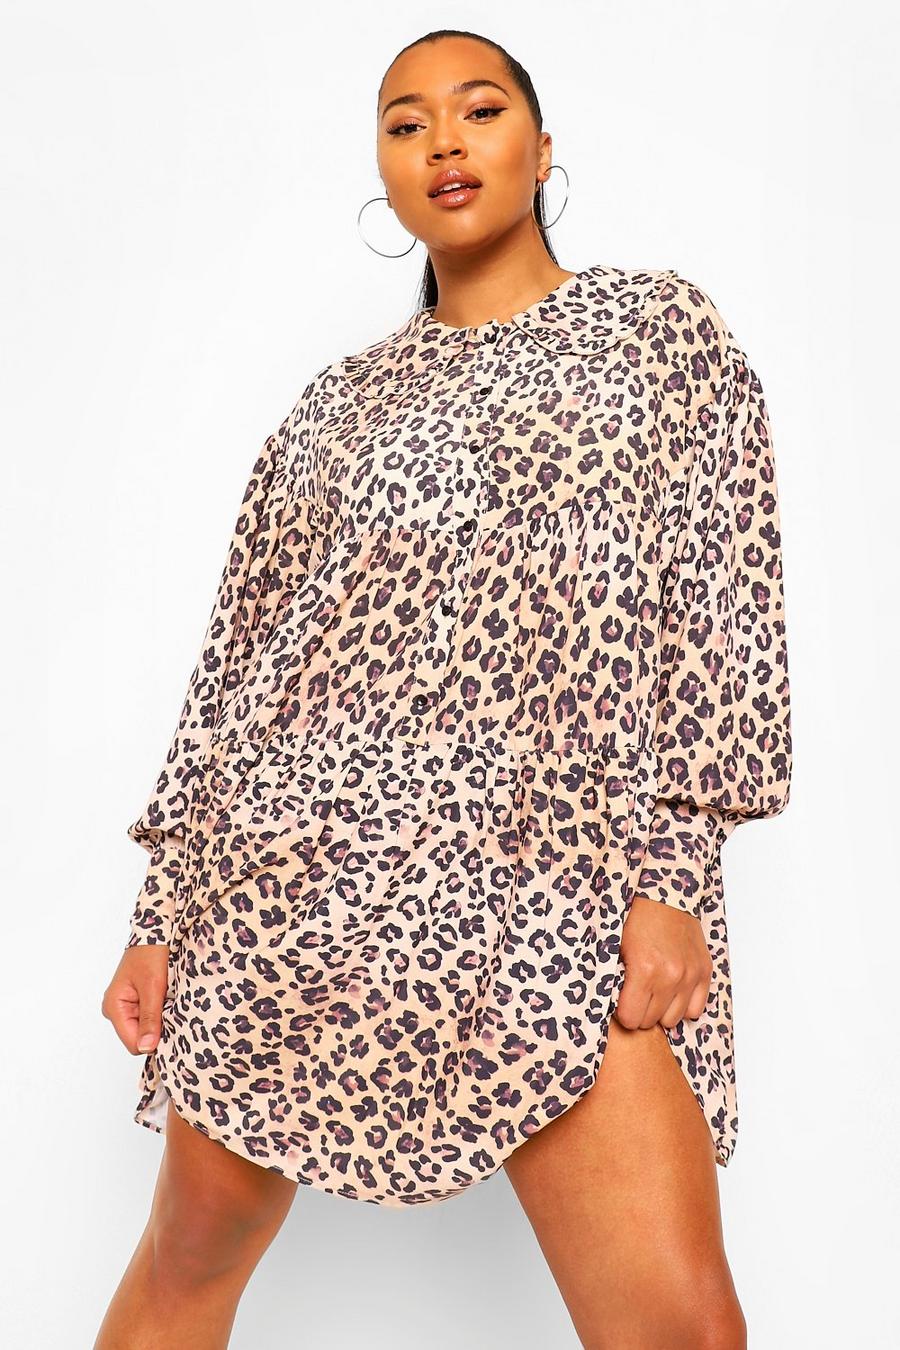 Vestido estilo blusón con cuello y estampado de leopardo, talla grande image number 1